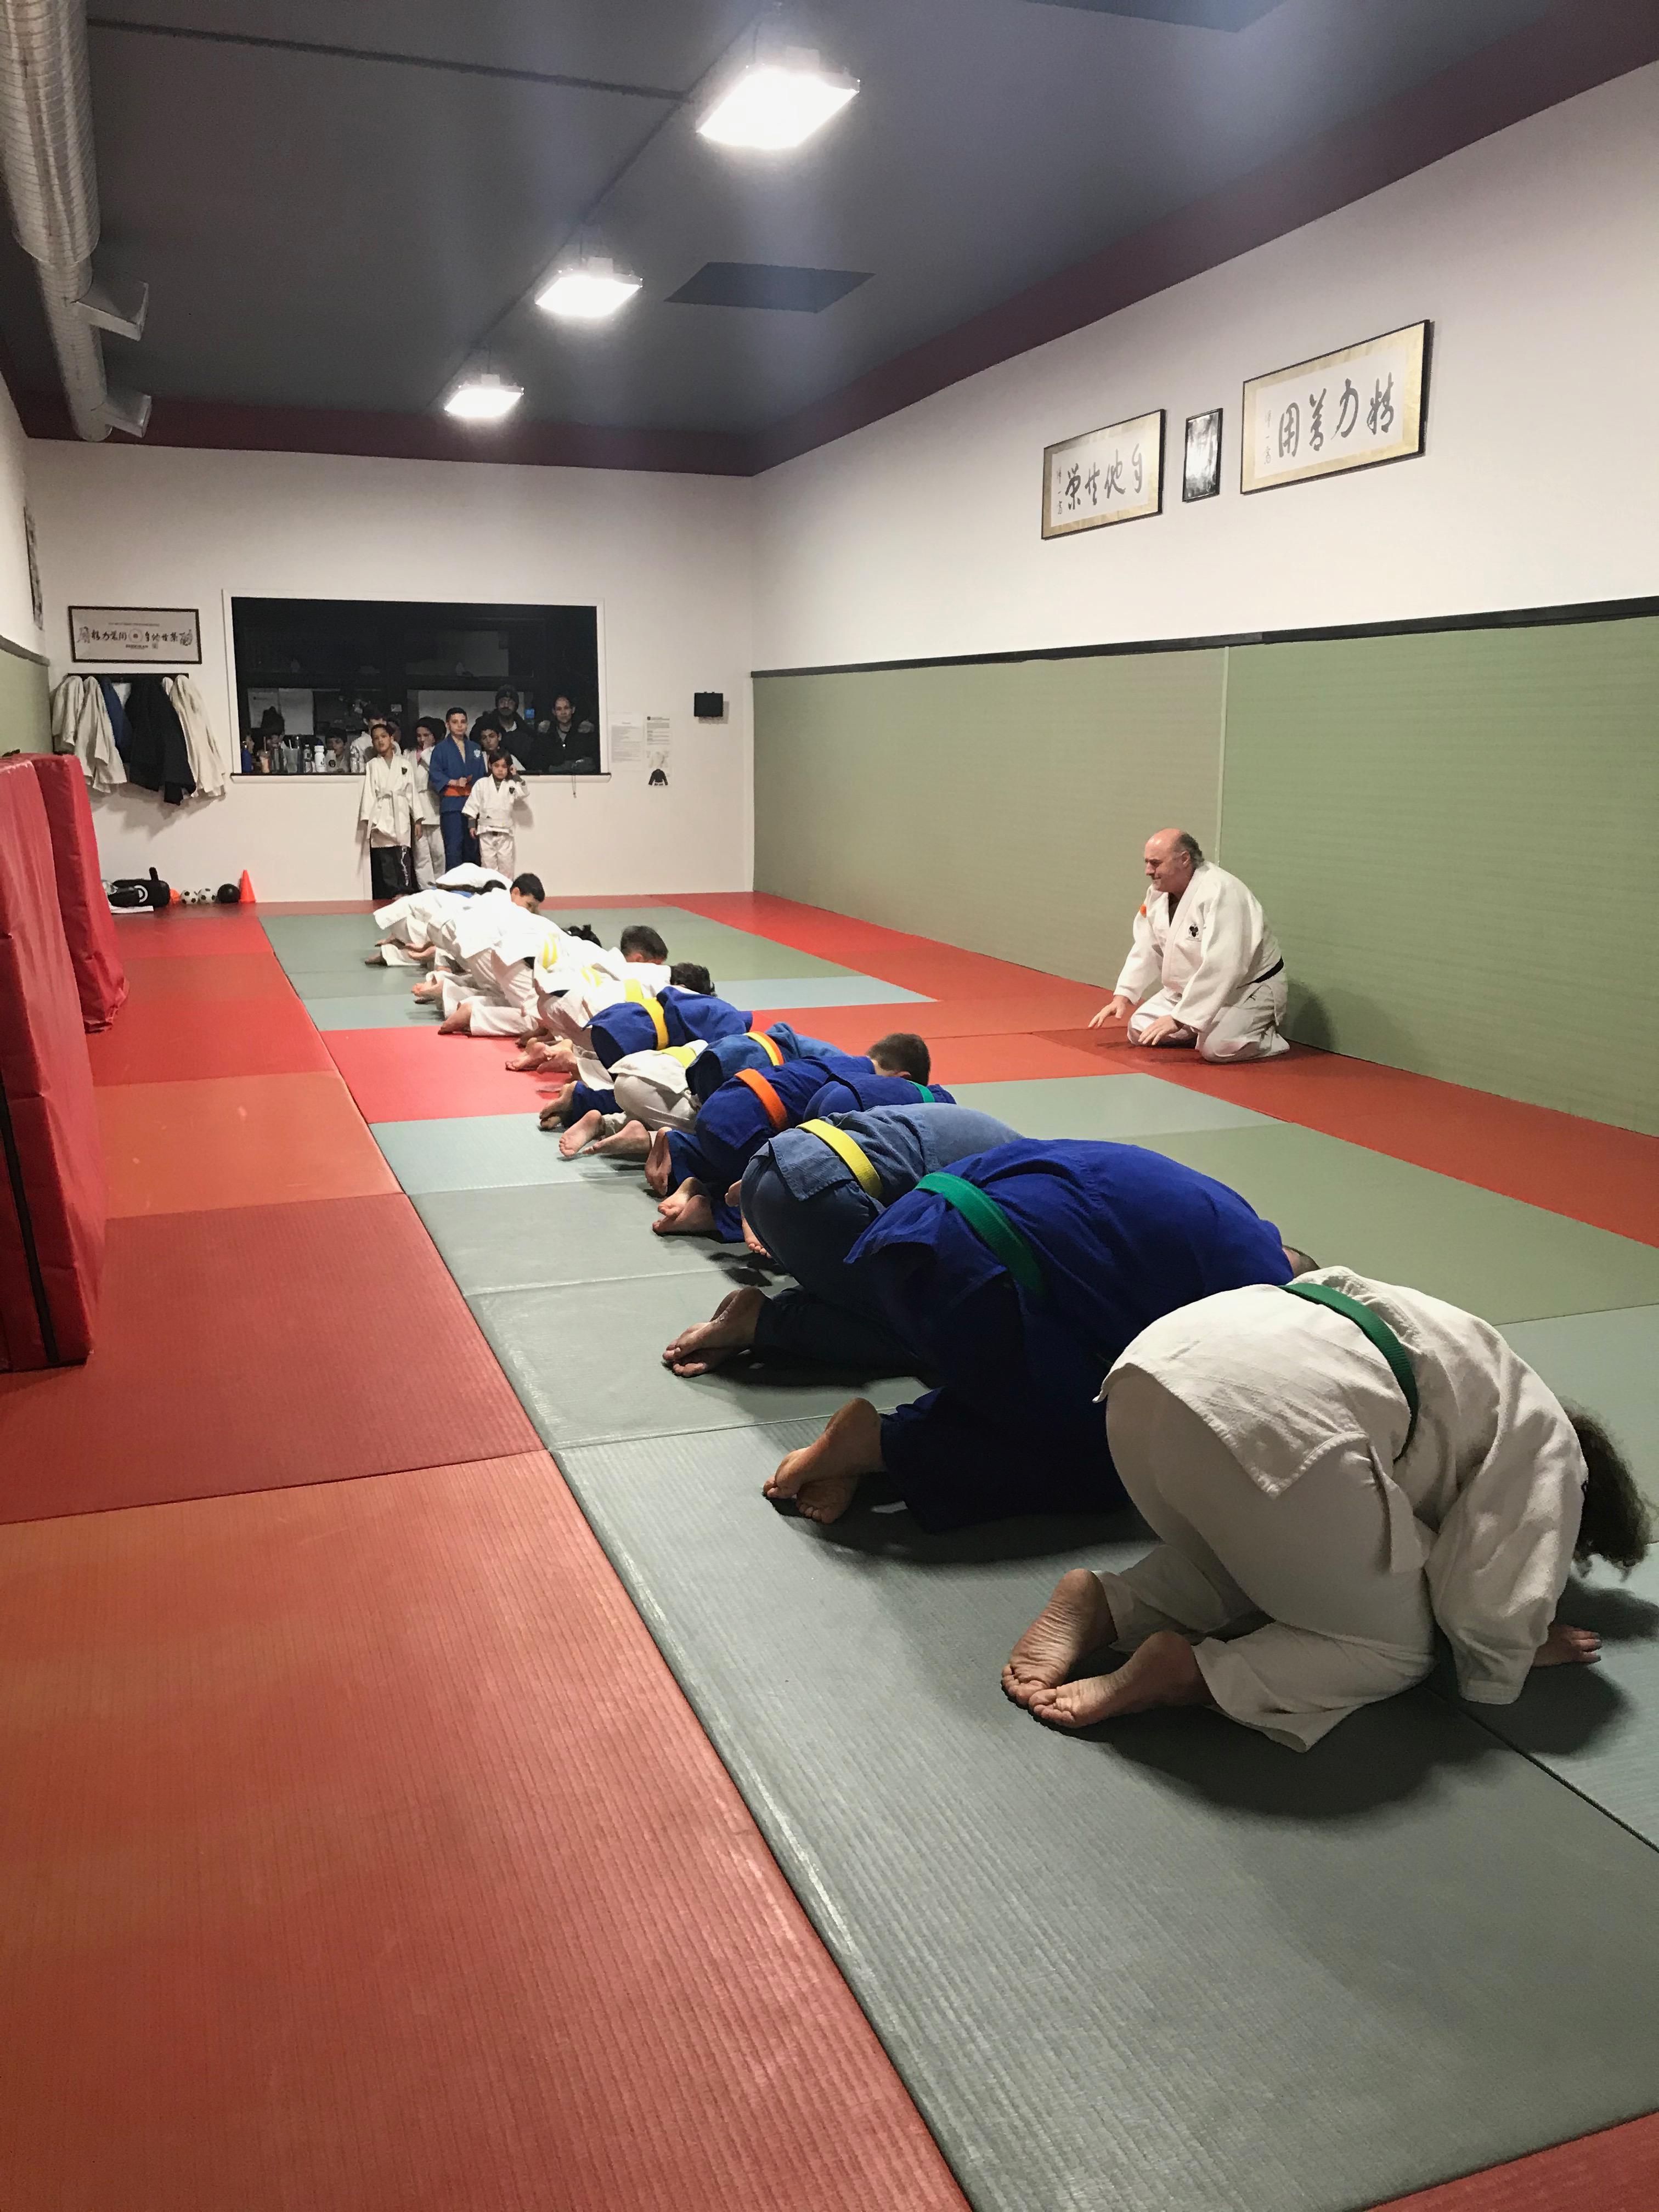 Staten Island Judo Jujitsu Dojo Photo